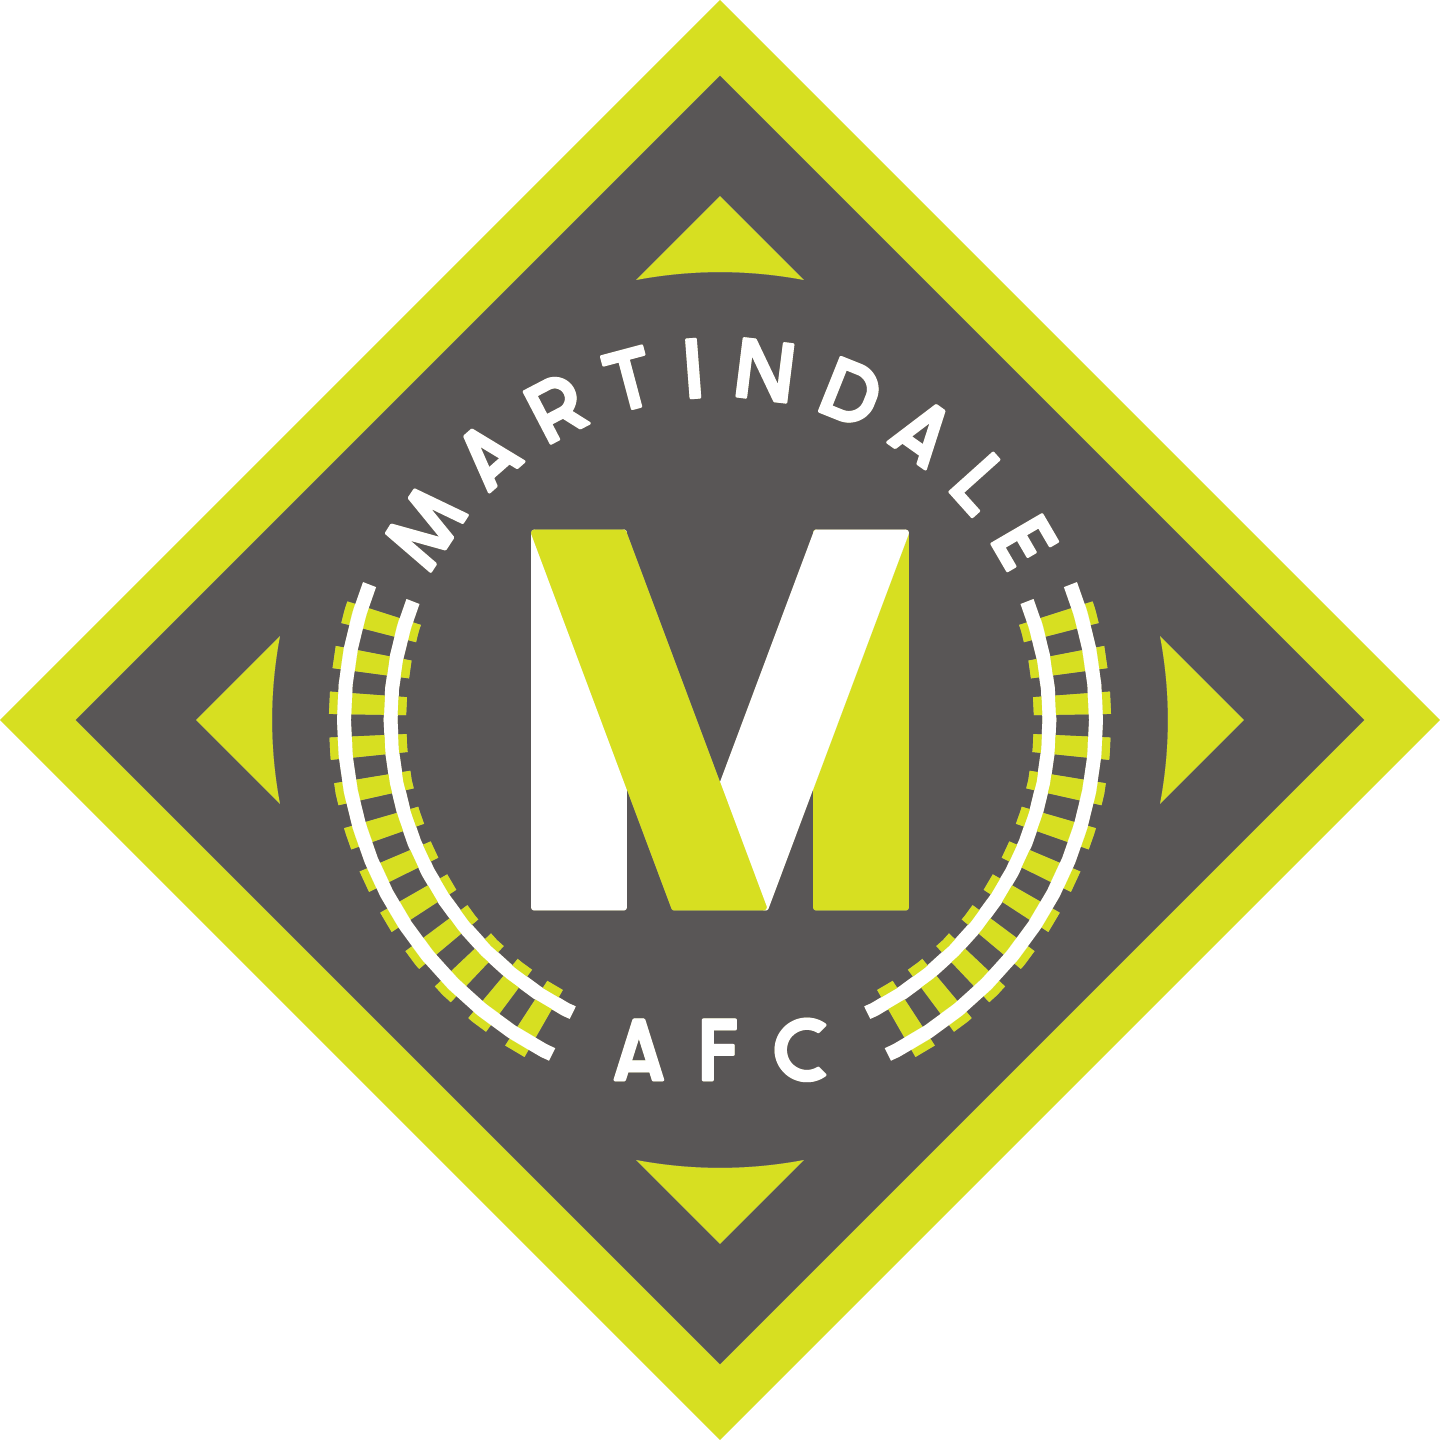 Martindale AFC Team Sponsorships